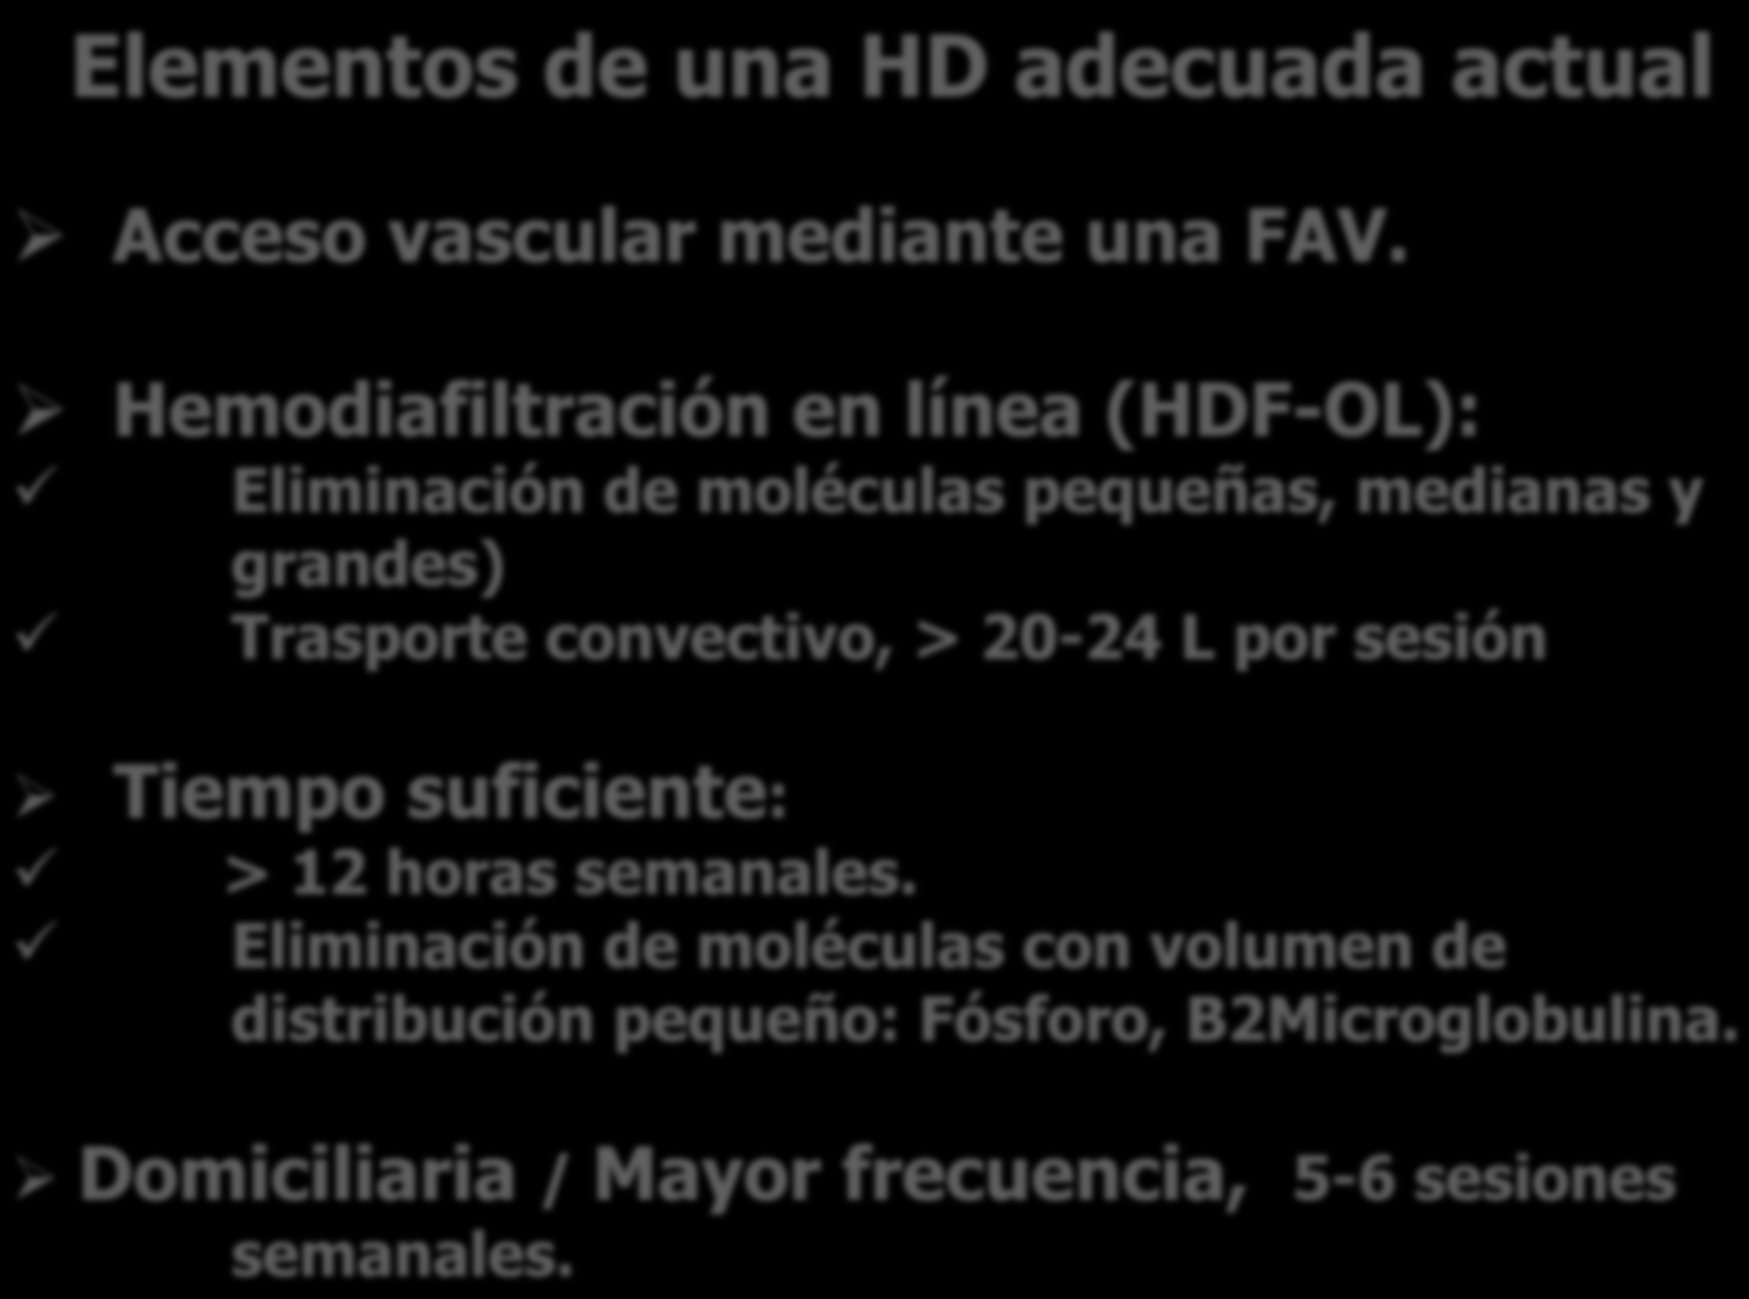 Elementos de una HD adecuada actual Acceso vascular mediante una FAV.